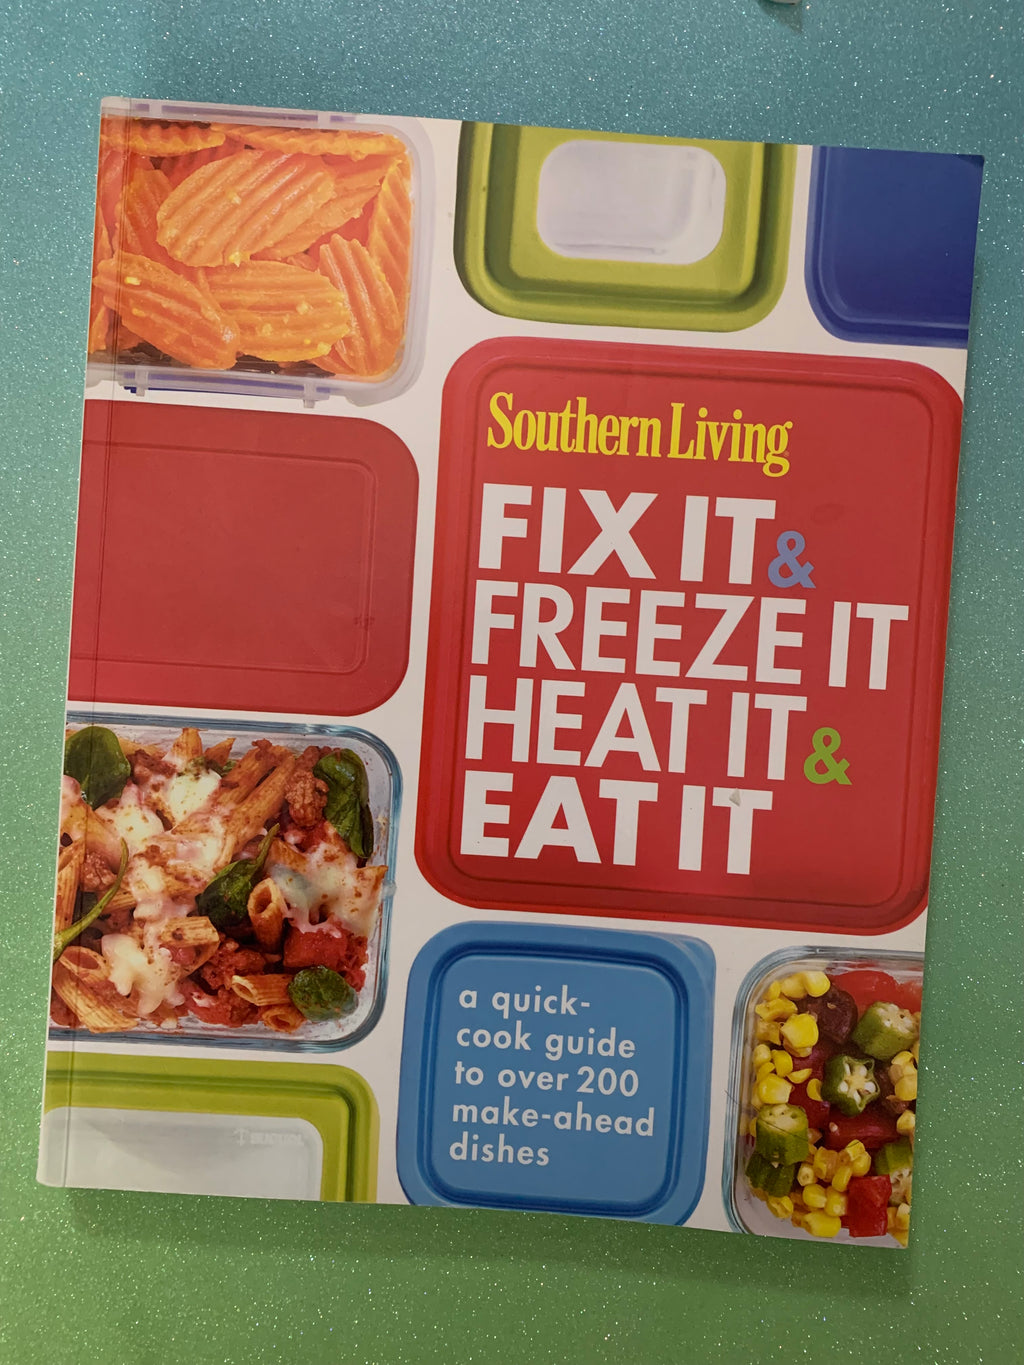 Fix It & Freeze It, Heat It & Eat It- By Southern Living